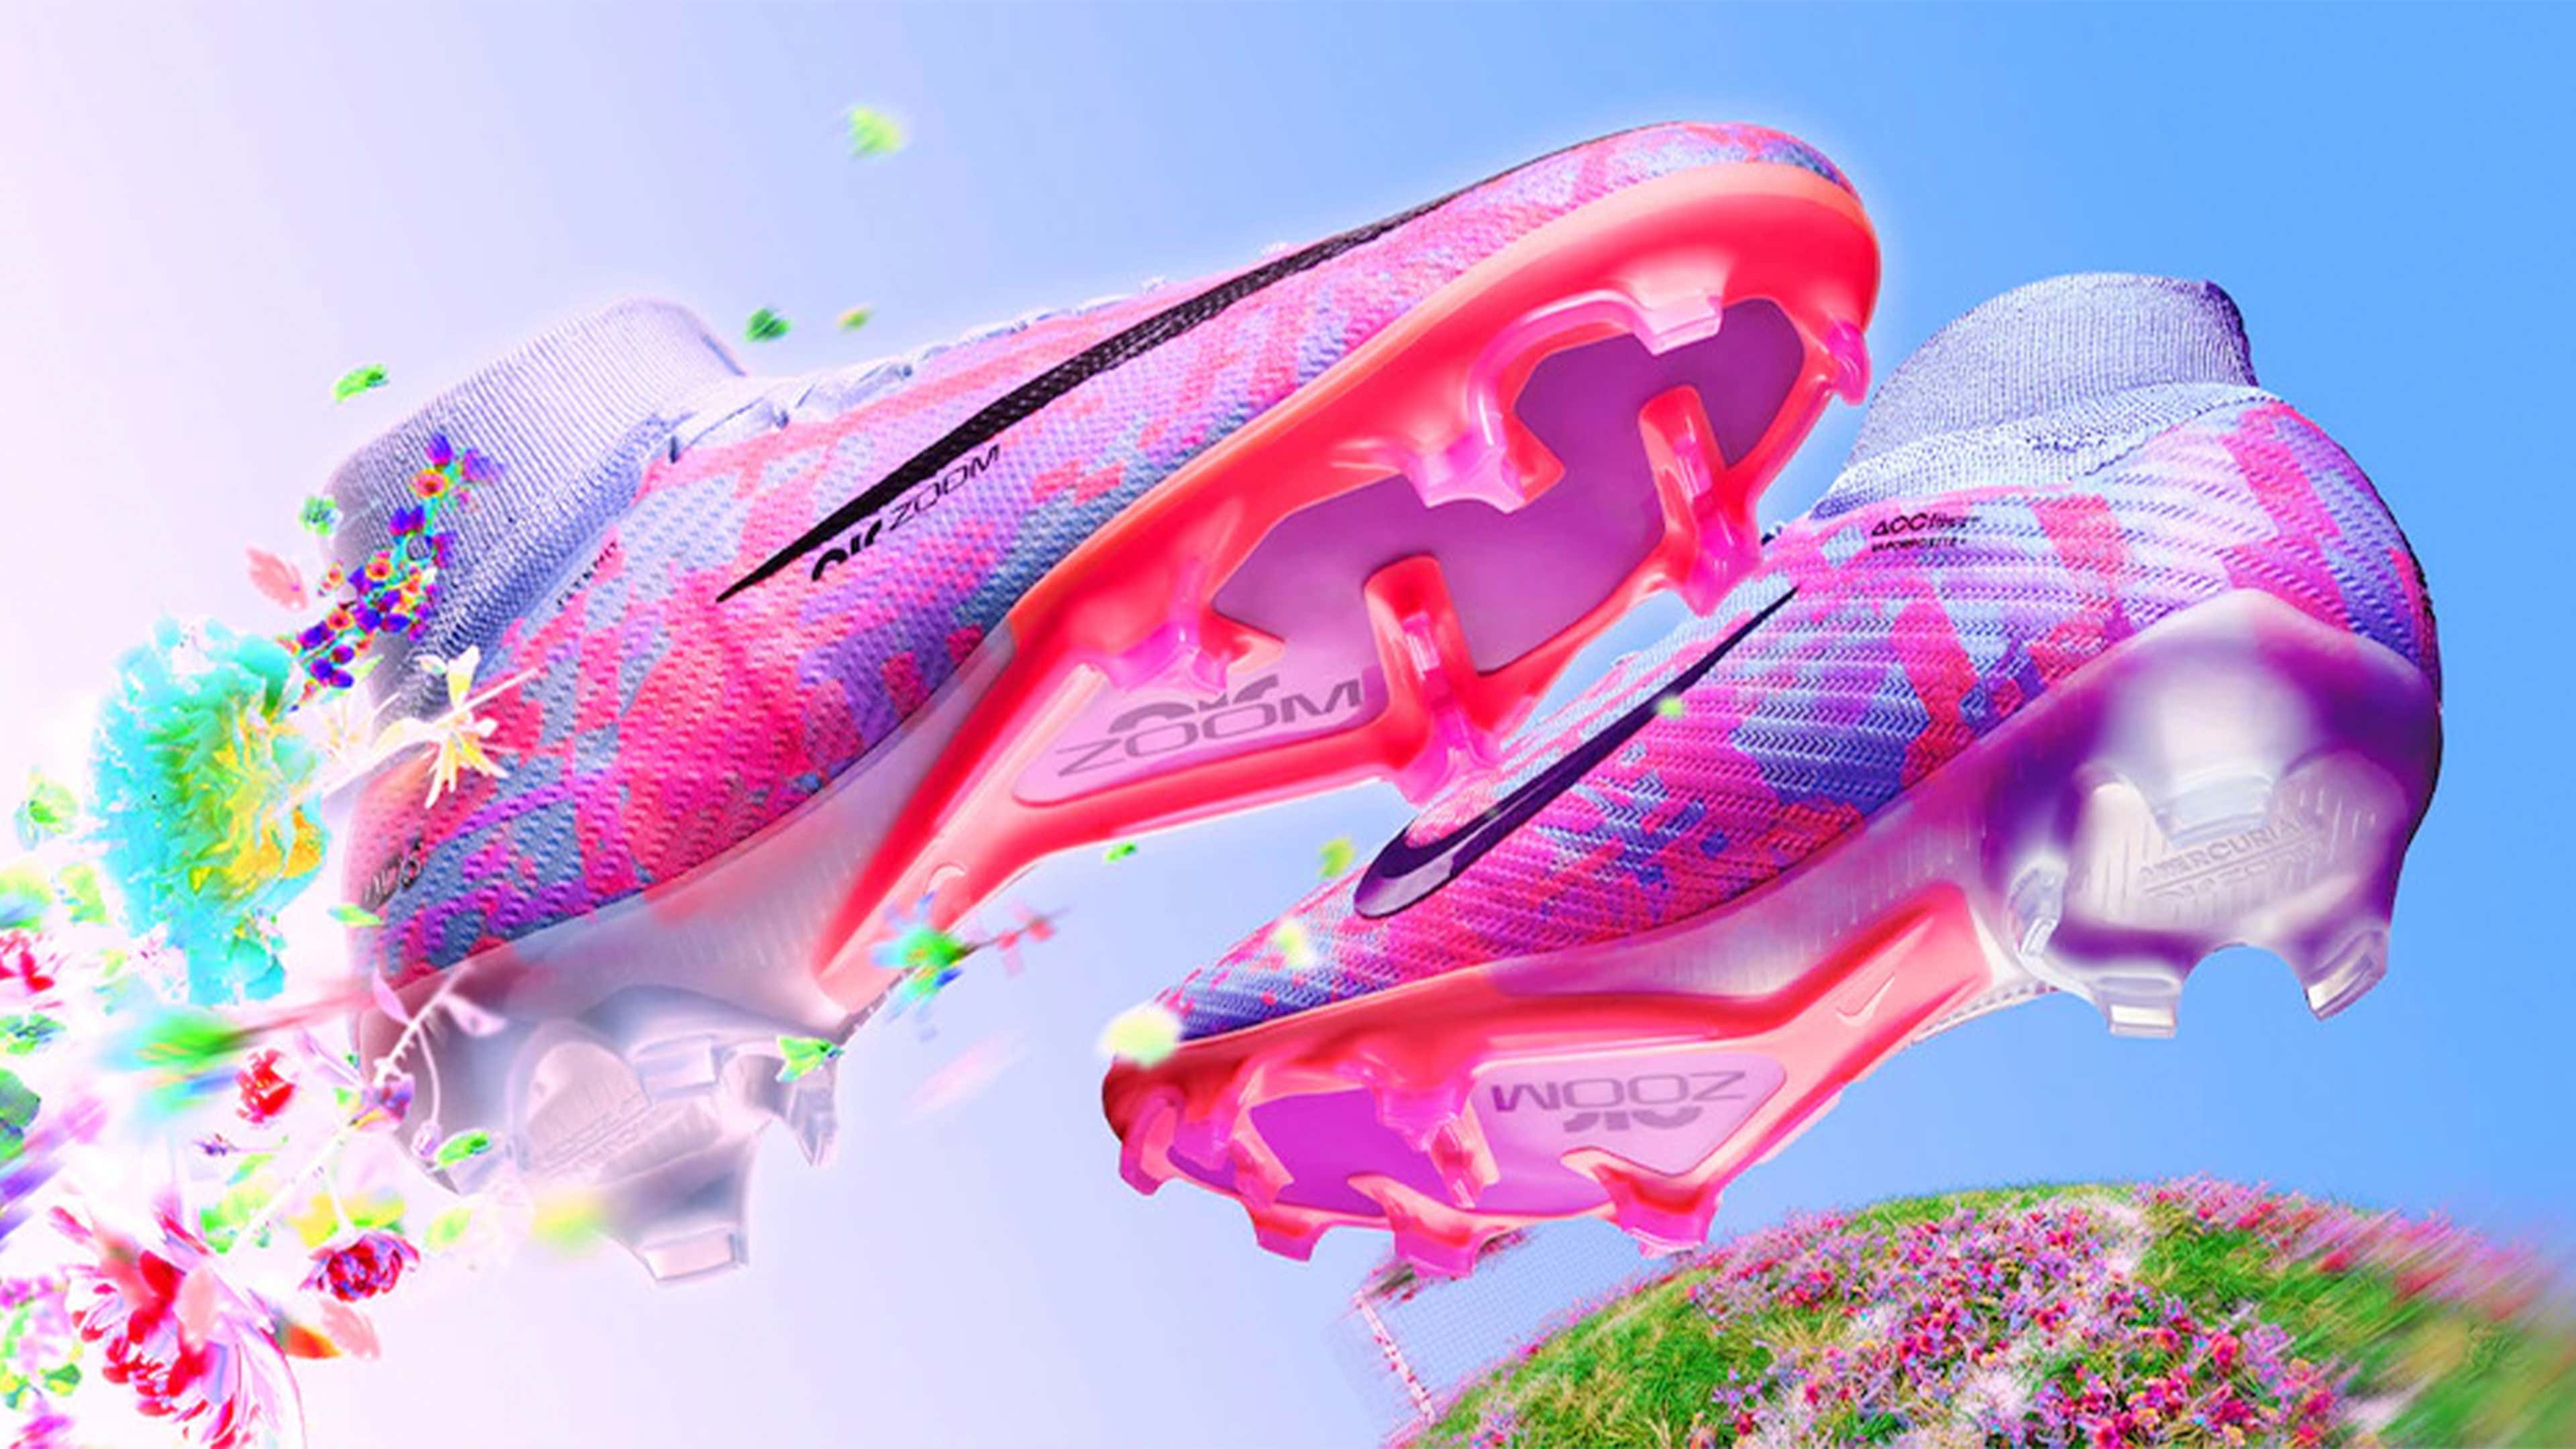 Kustlijn natuurlijk slaaf Nike unveil floral Mercurial Dream Speed 006 boots | Goal.com US